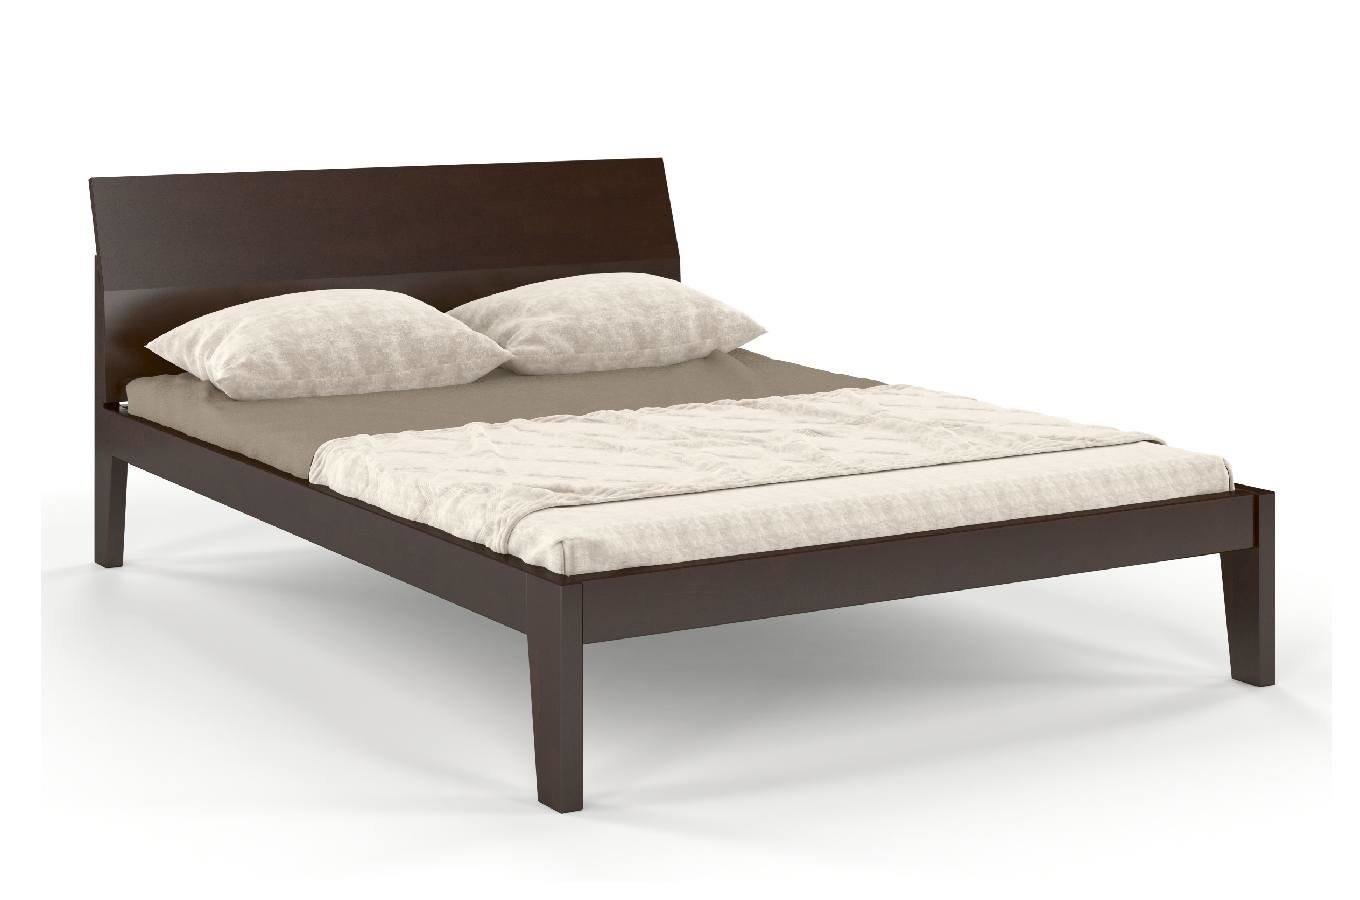 Łóżko drewniane bukowe Skandica AGAVA / 160x200 cm, kolor palisander